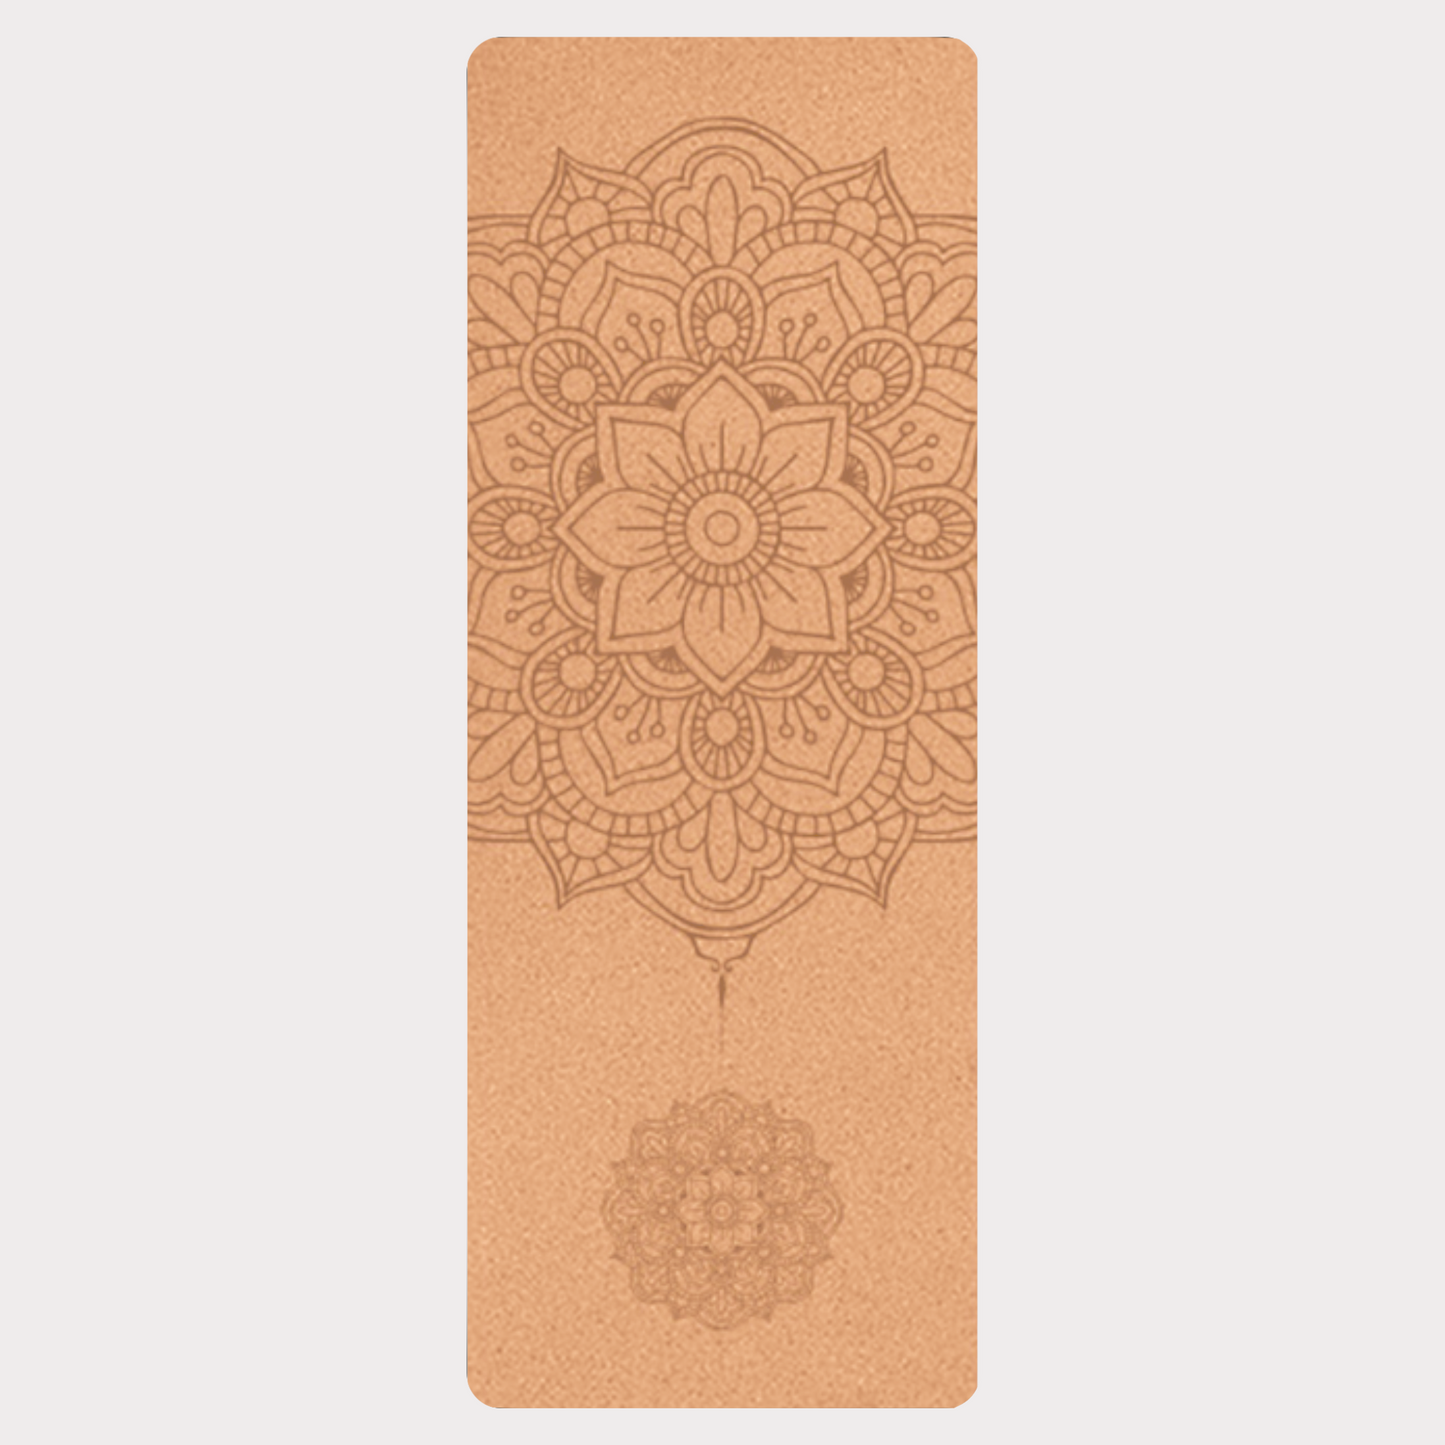 Mandala Yoga Mat (4-6mm)